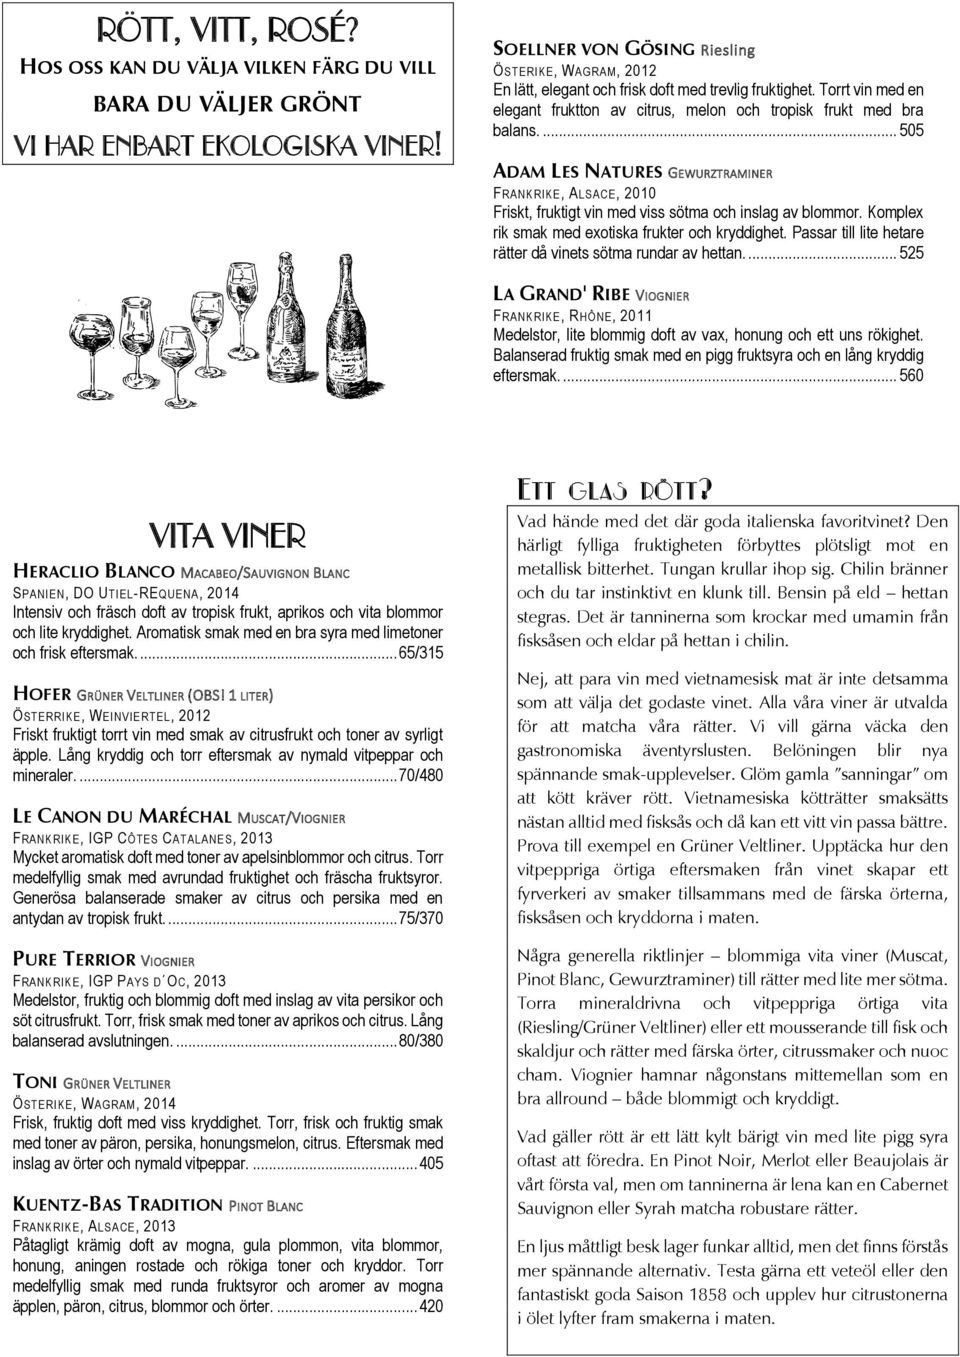 ... 505 ADAM LES NATURES GEWURZTRAMINER FRANKRIKE, ALSACE, 2010 Friskt, fruktigt vin med viss sötma och inslag av blommor. Komplex rik smak med exotiska frukter och kryddighet.